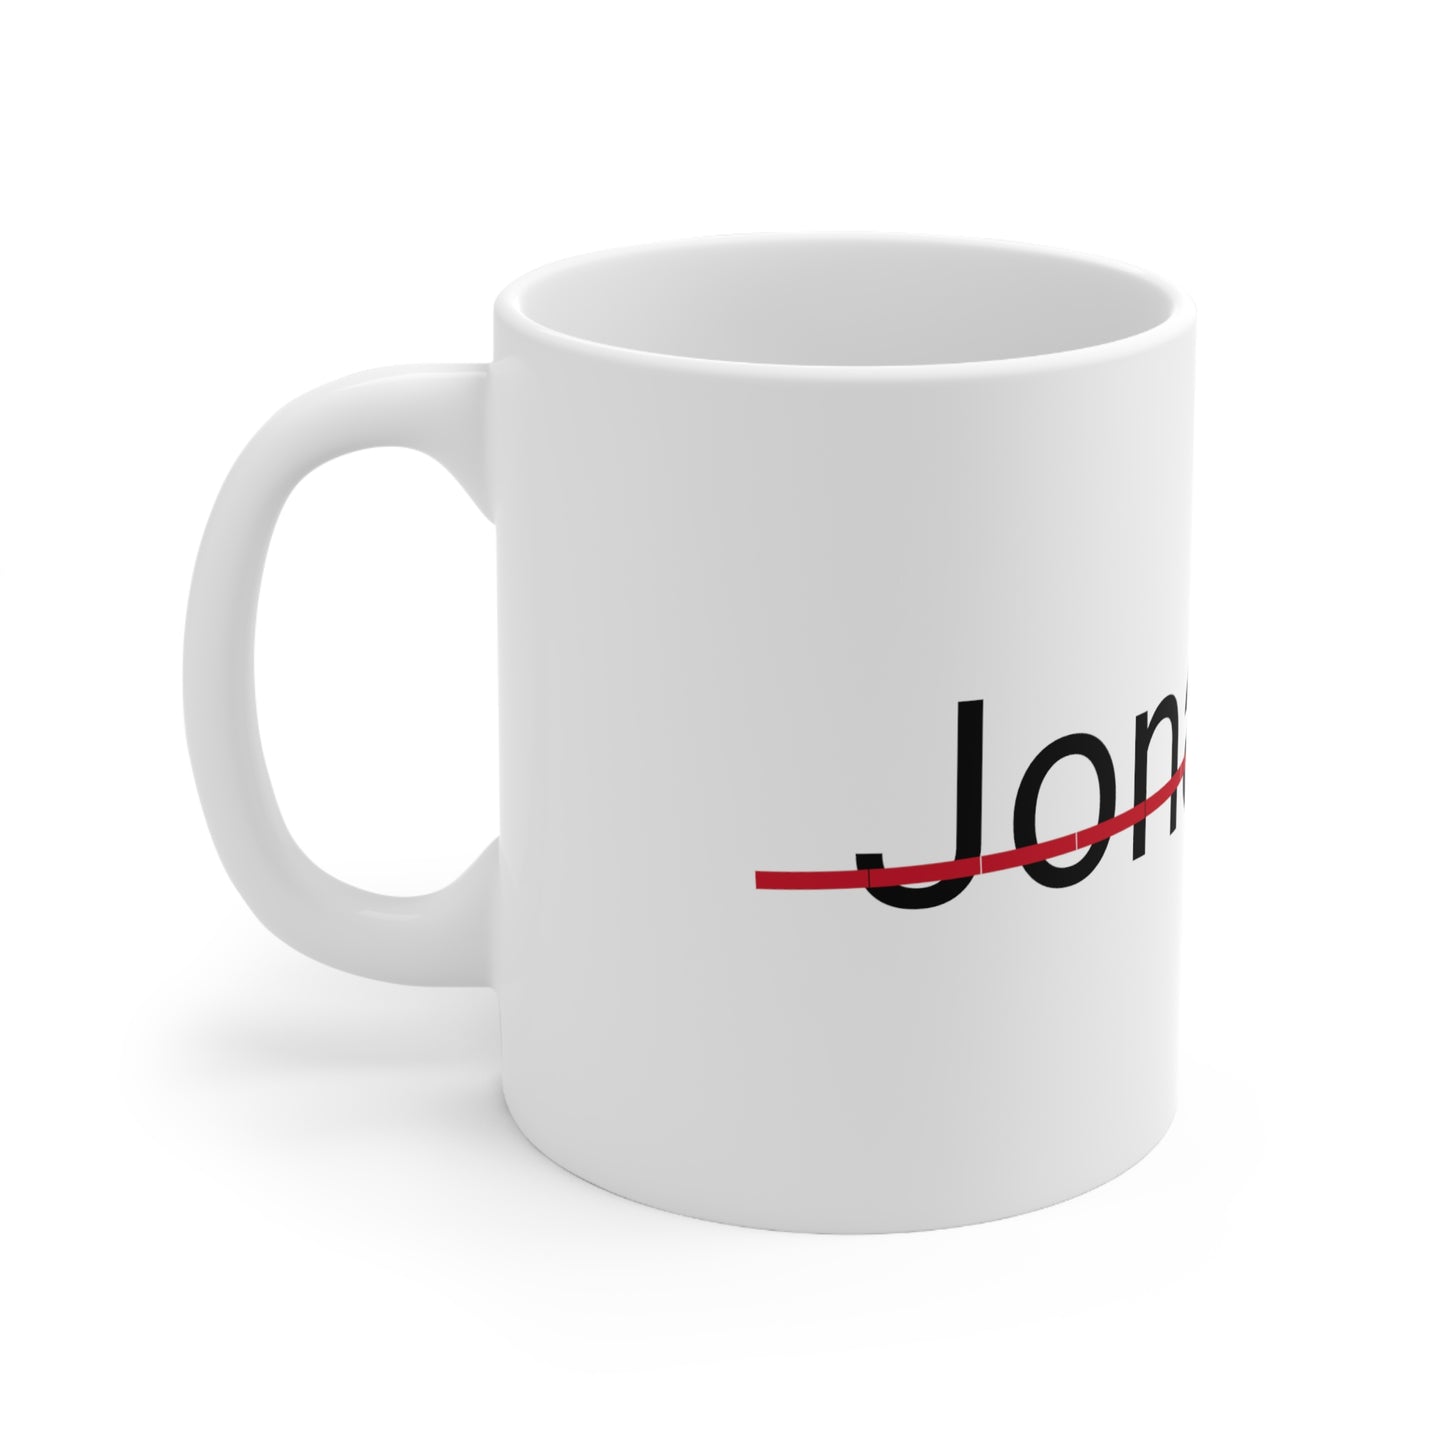 Jonathan is not my name Mug 11oz